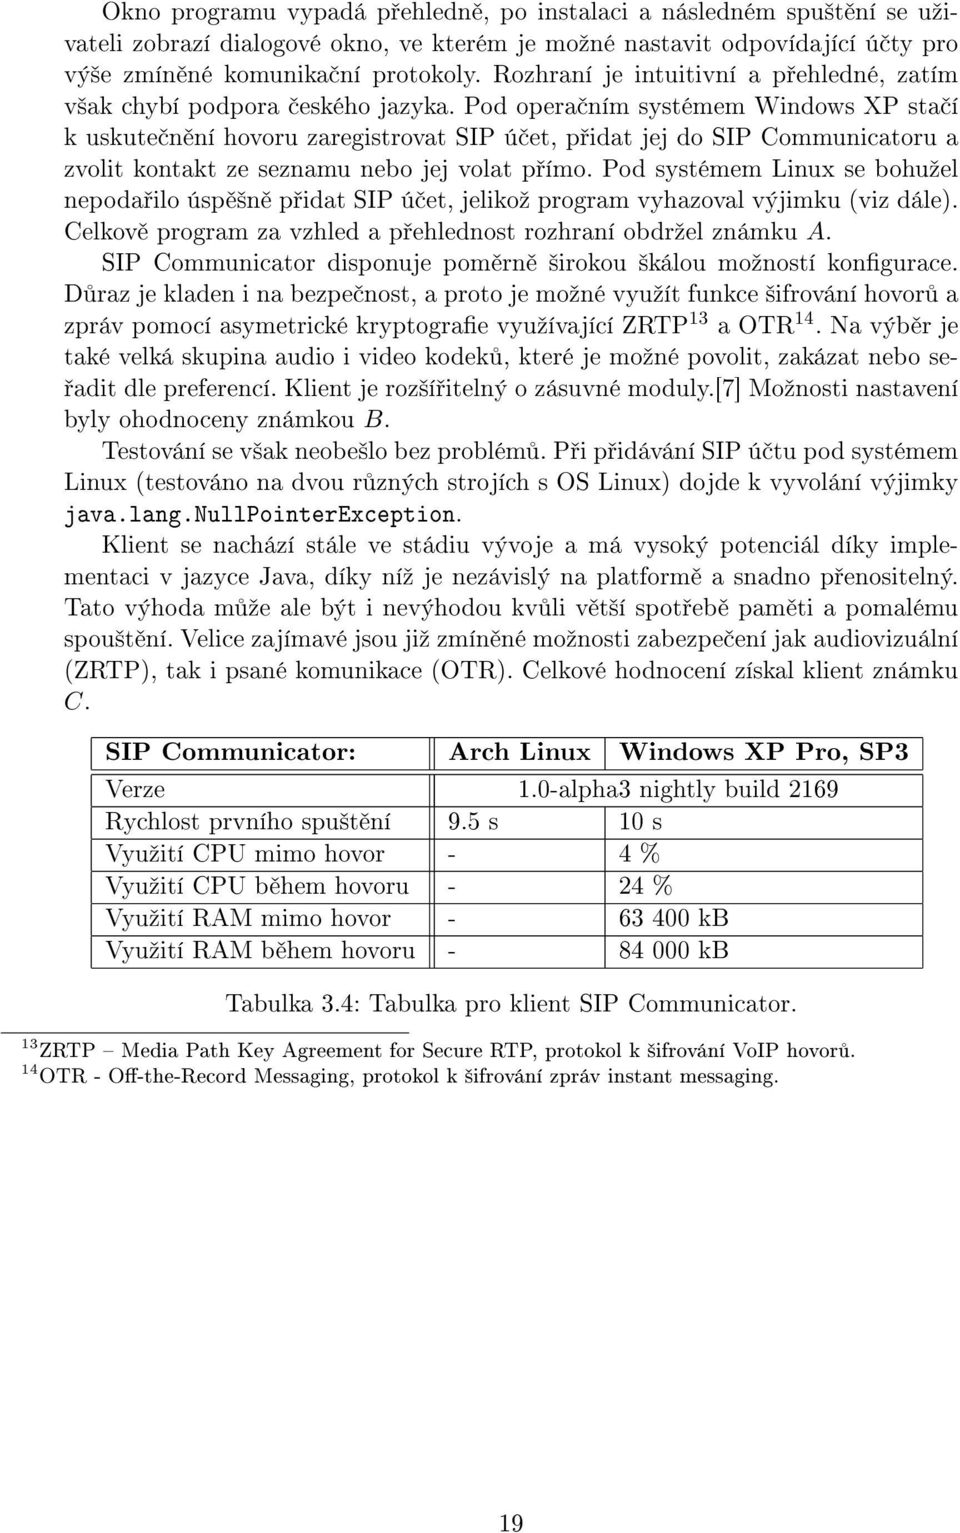 Pod opera ním systémem Windows XP sta í k uskute n ní hovoru zaregistrovat SIP ú et, p idat jej do SIP Communicatoru a zvolit kontakt ze seznamu nebo jej volat p ímo.